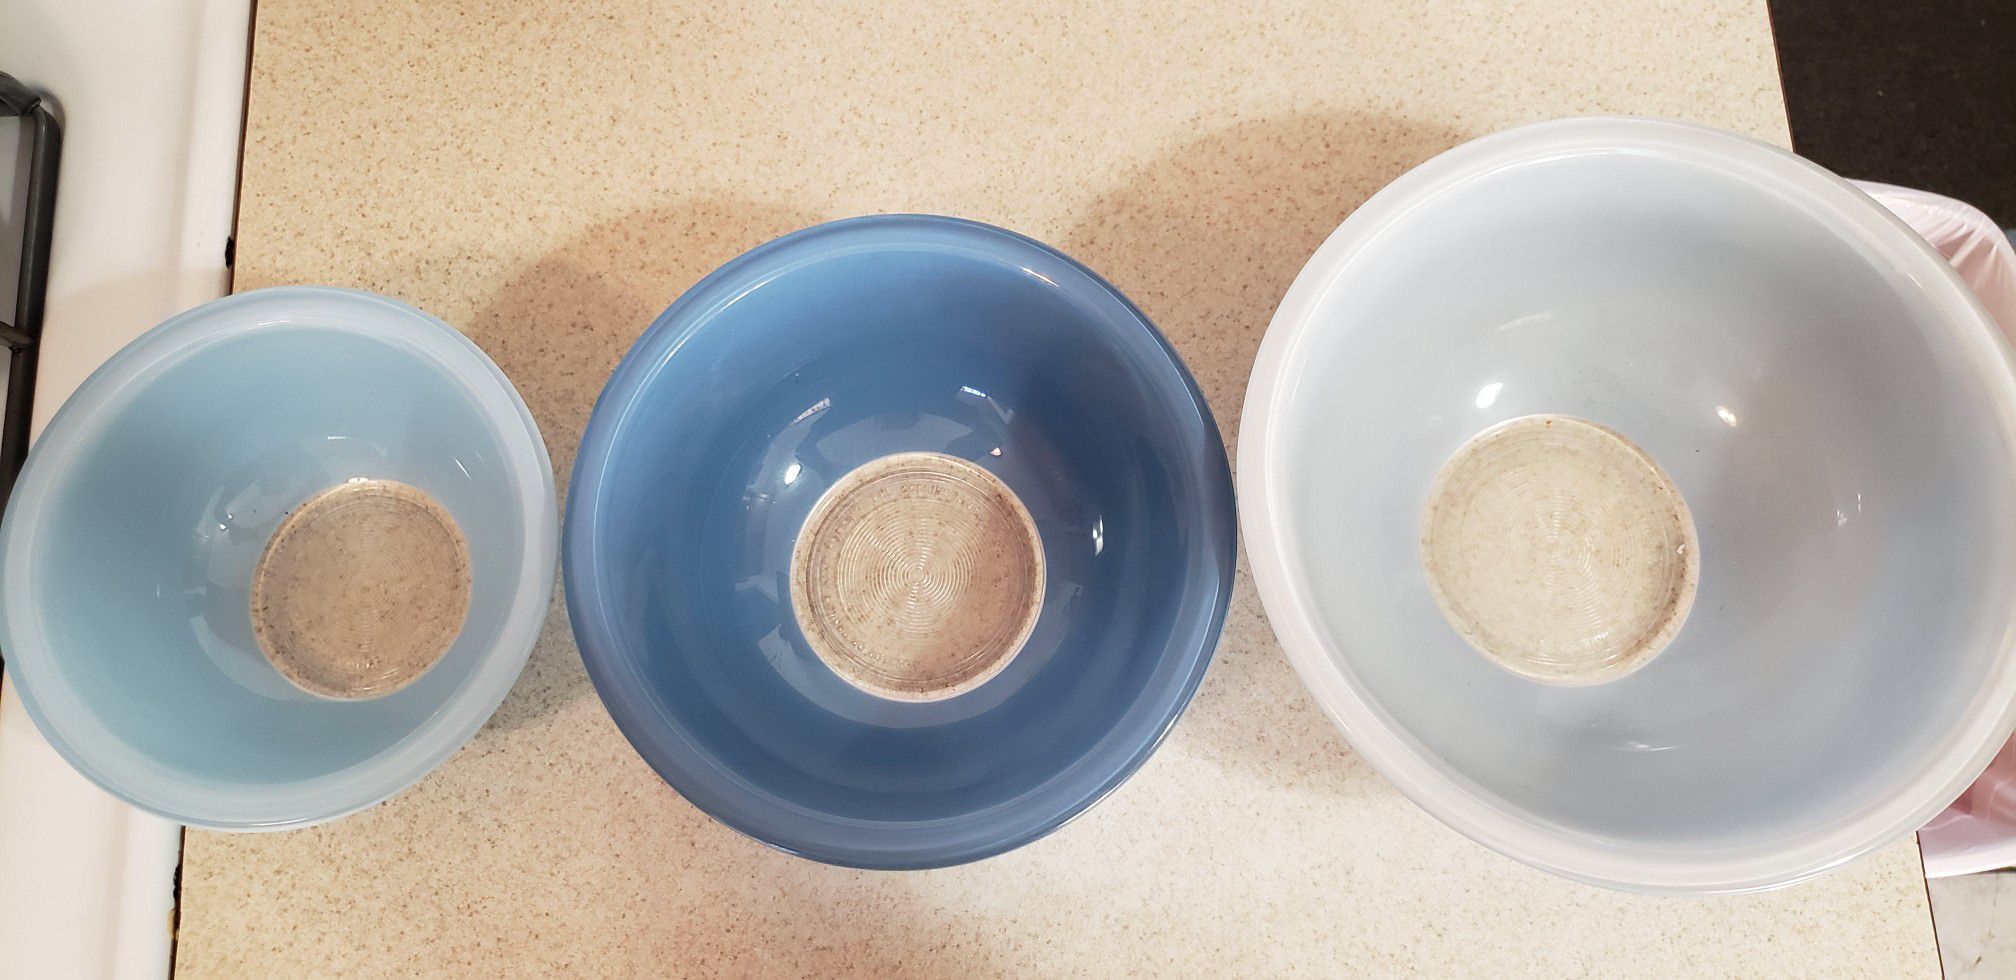 Pyrex bowls